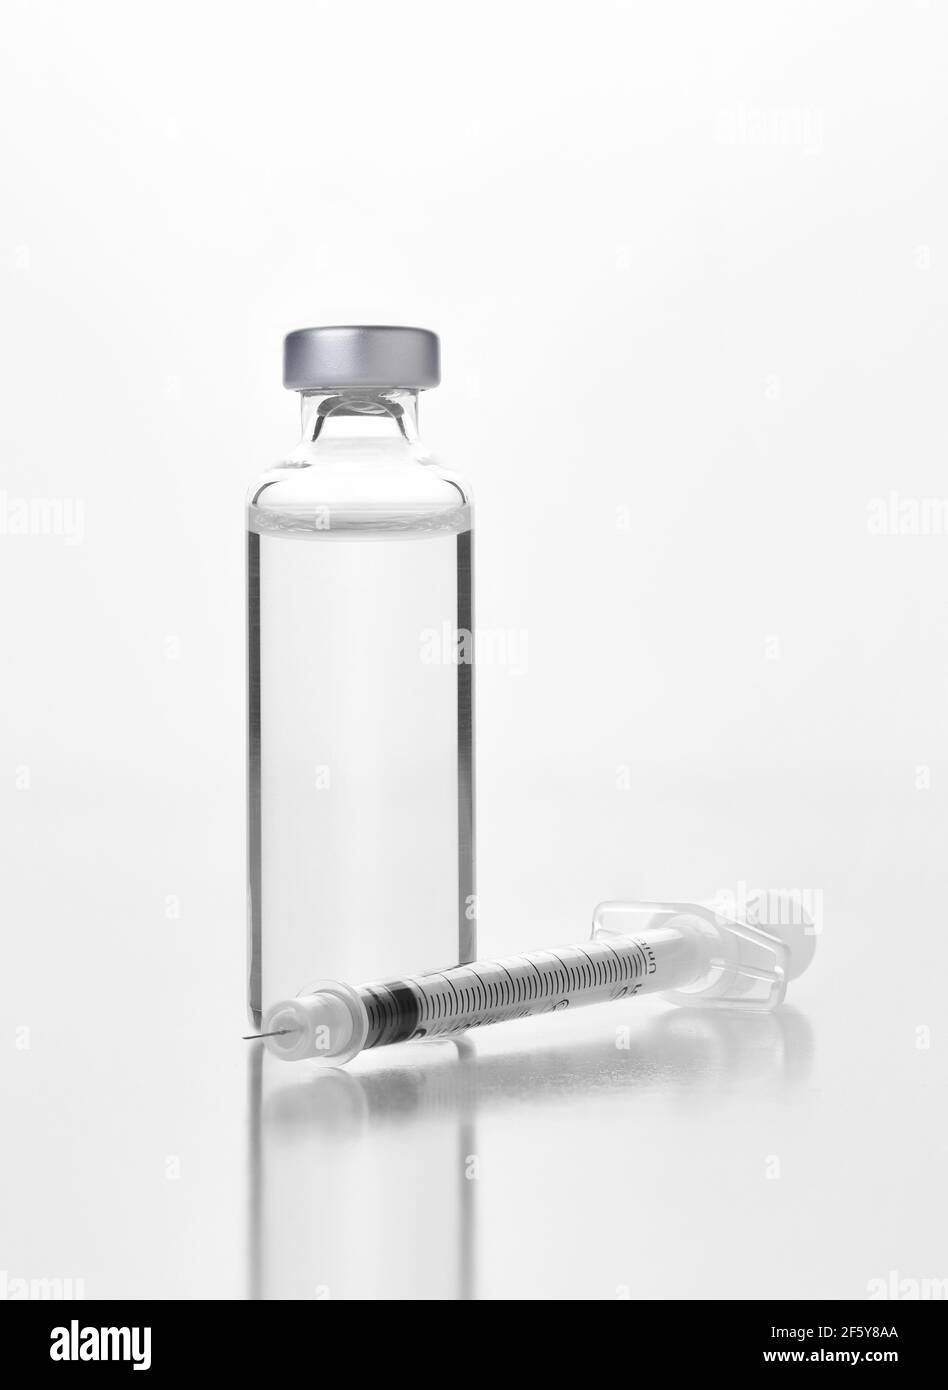 Nahaufnahme eines Fläschchens eines injizierbaren Medikaments oder Impfstoffs und Spritze auf Weiß. Flasche hat kein Etikett. Stockfoto